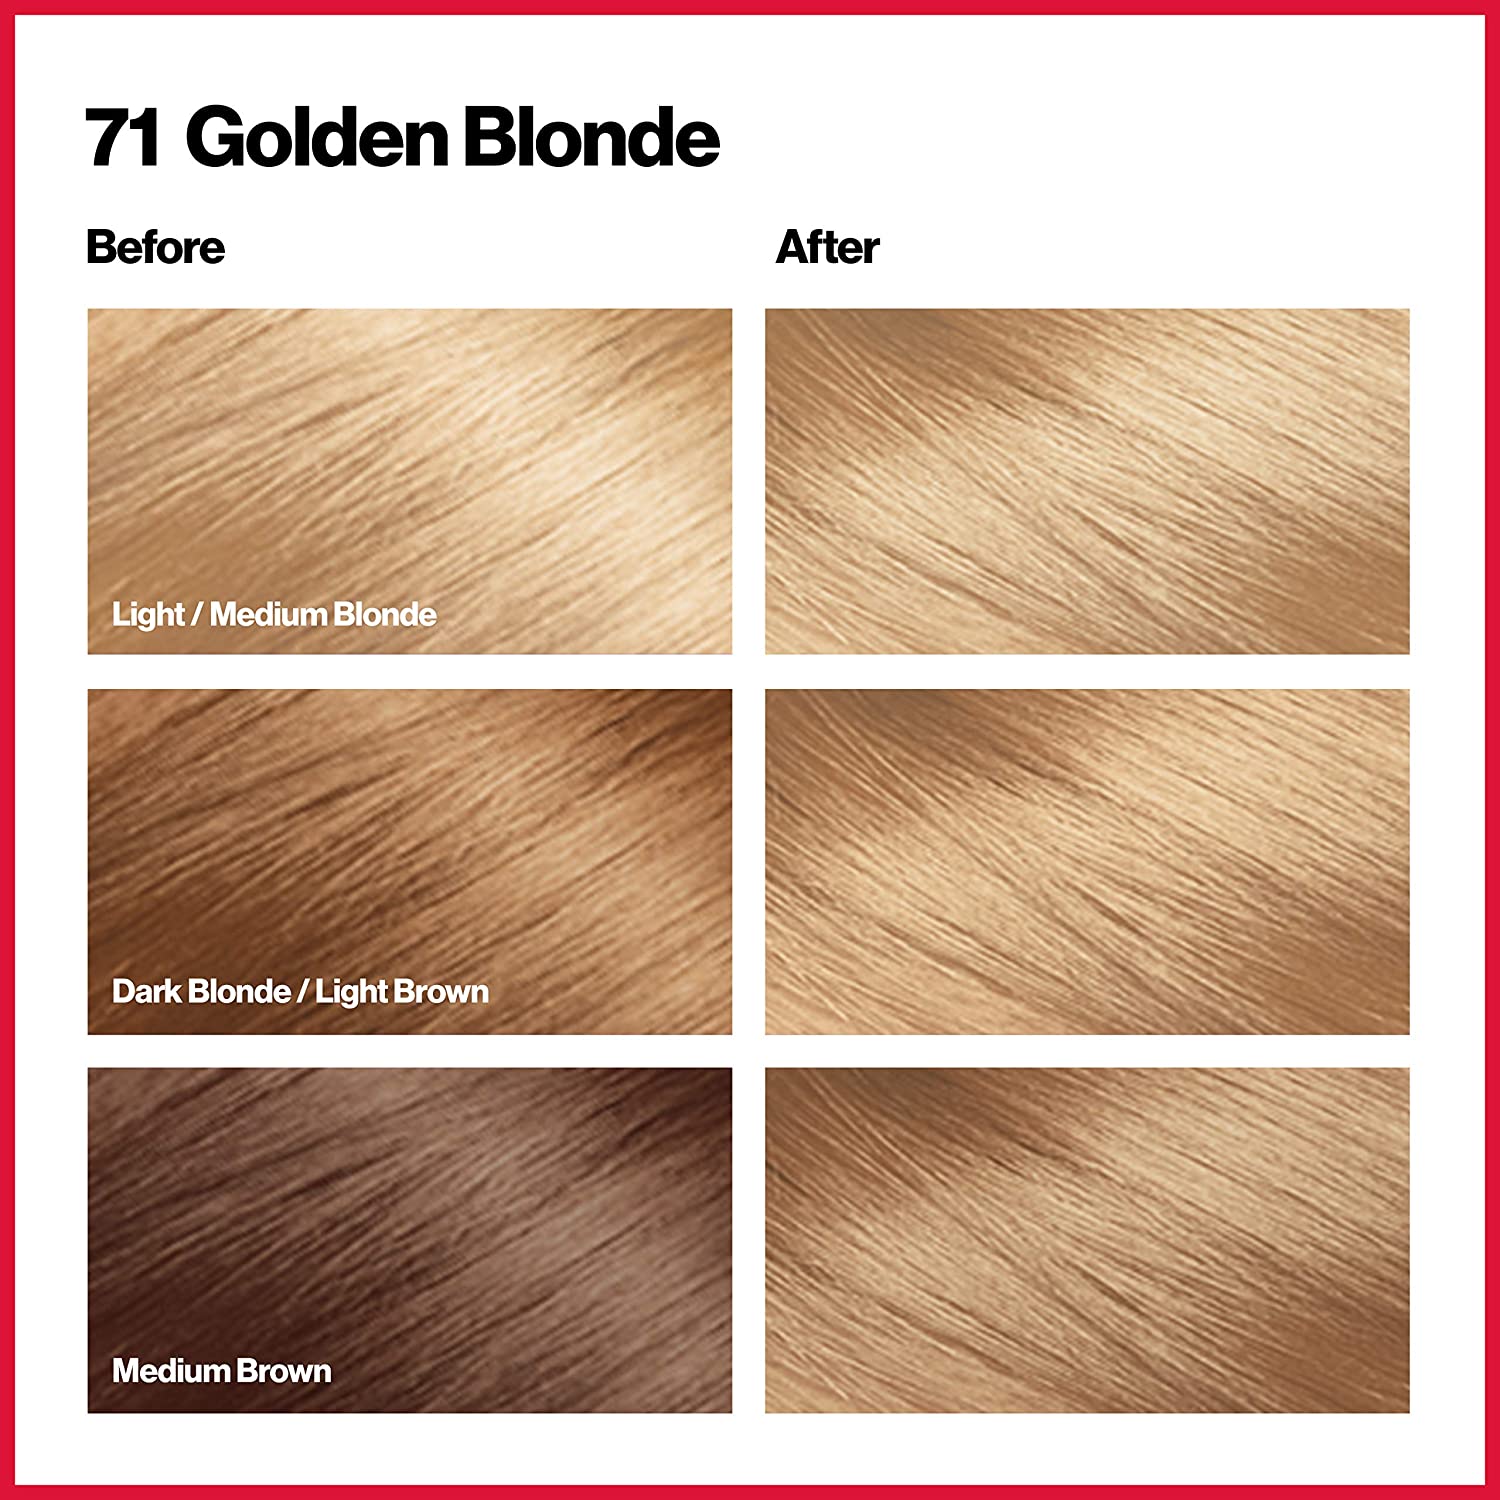 Golden Blonde